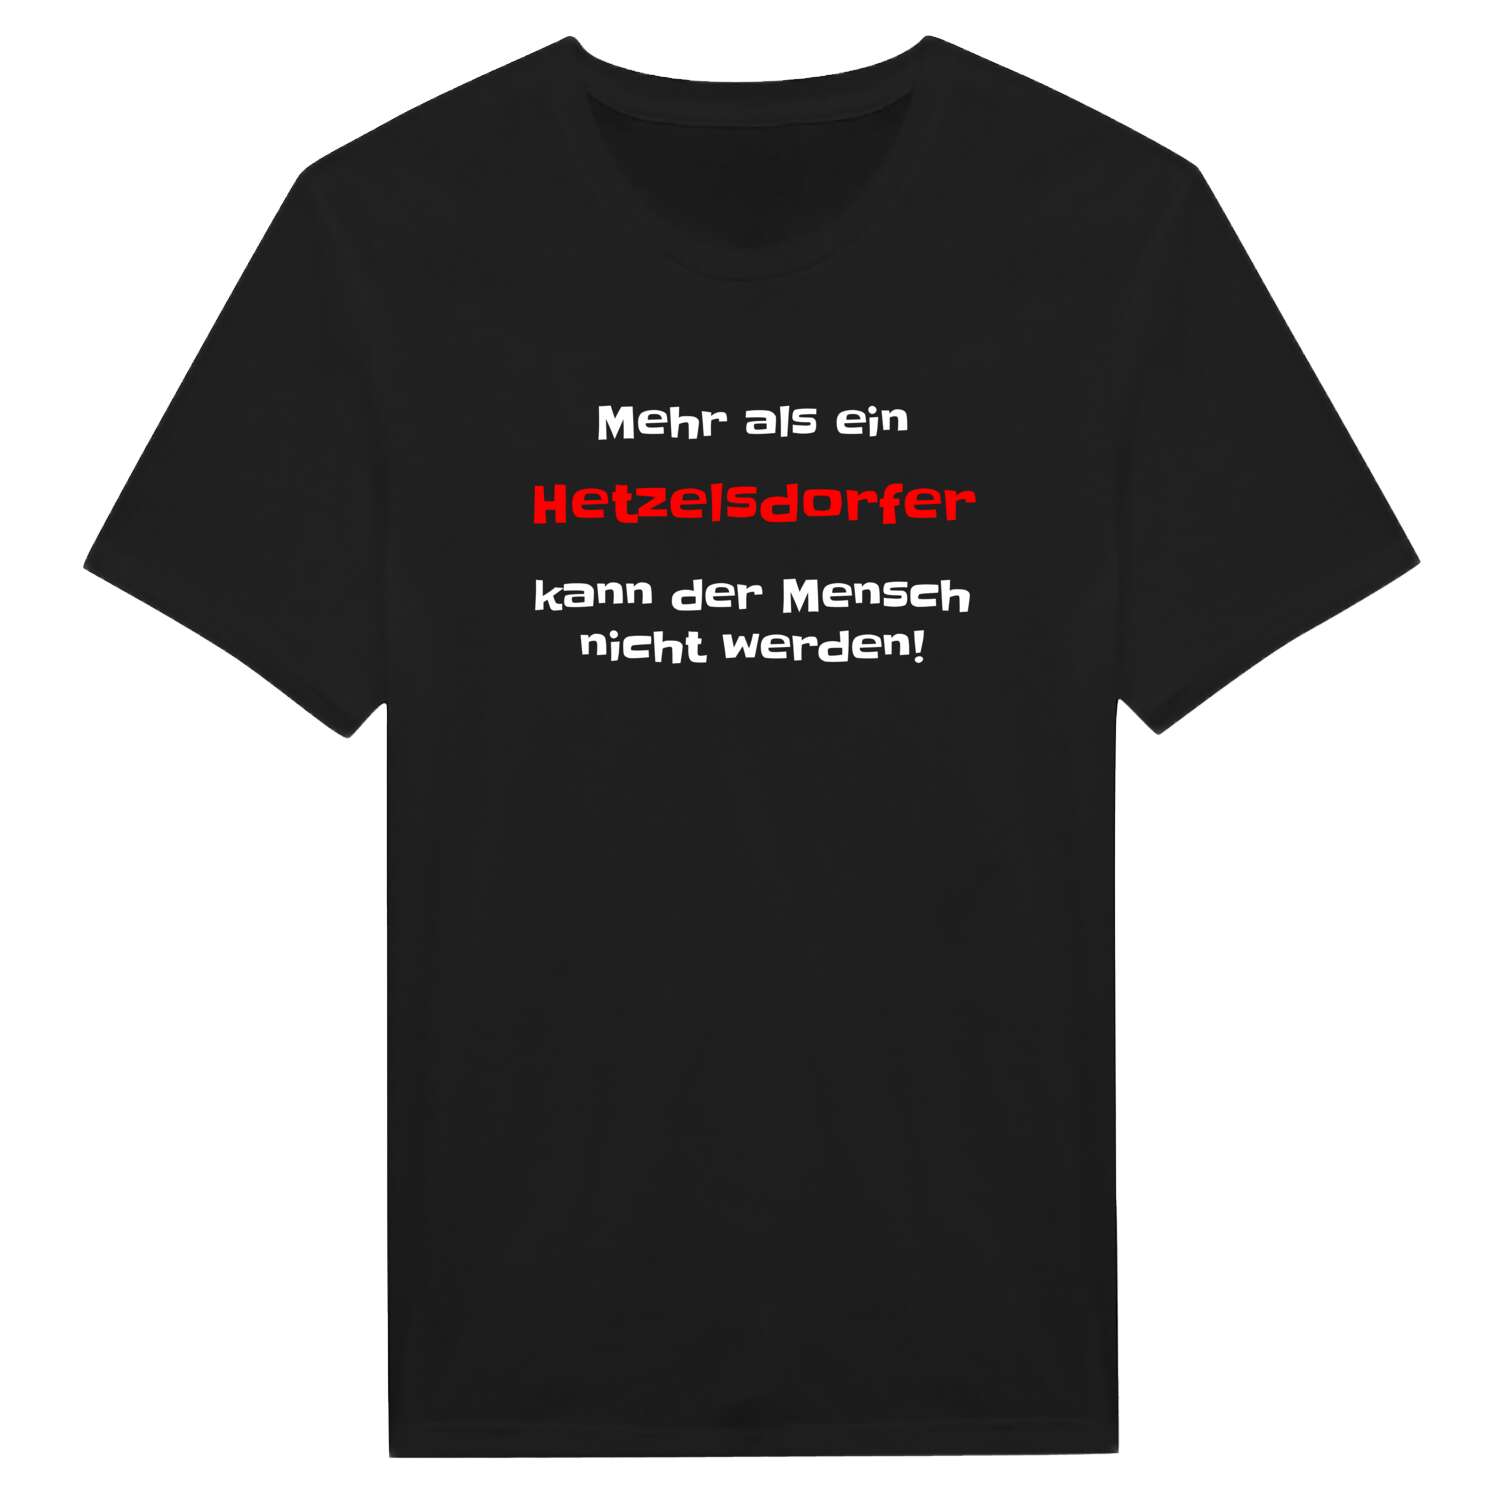 Hetzelsdorf T-Shirt »Mehr als ein«